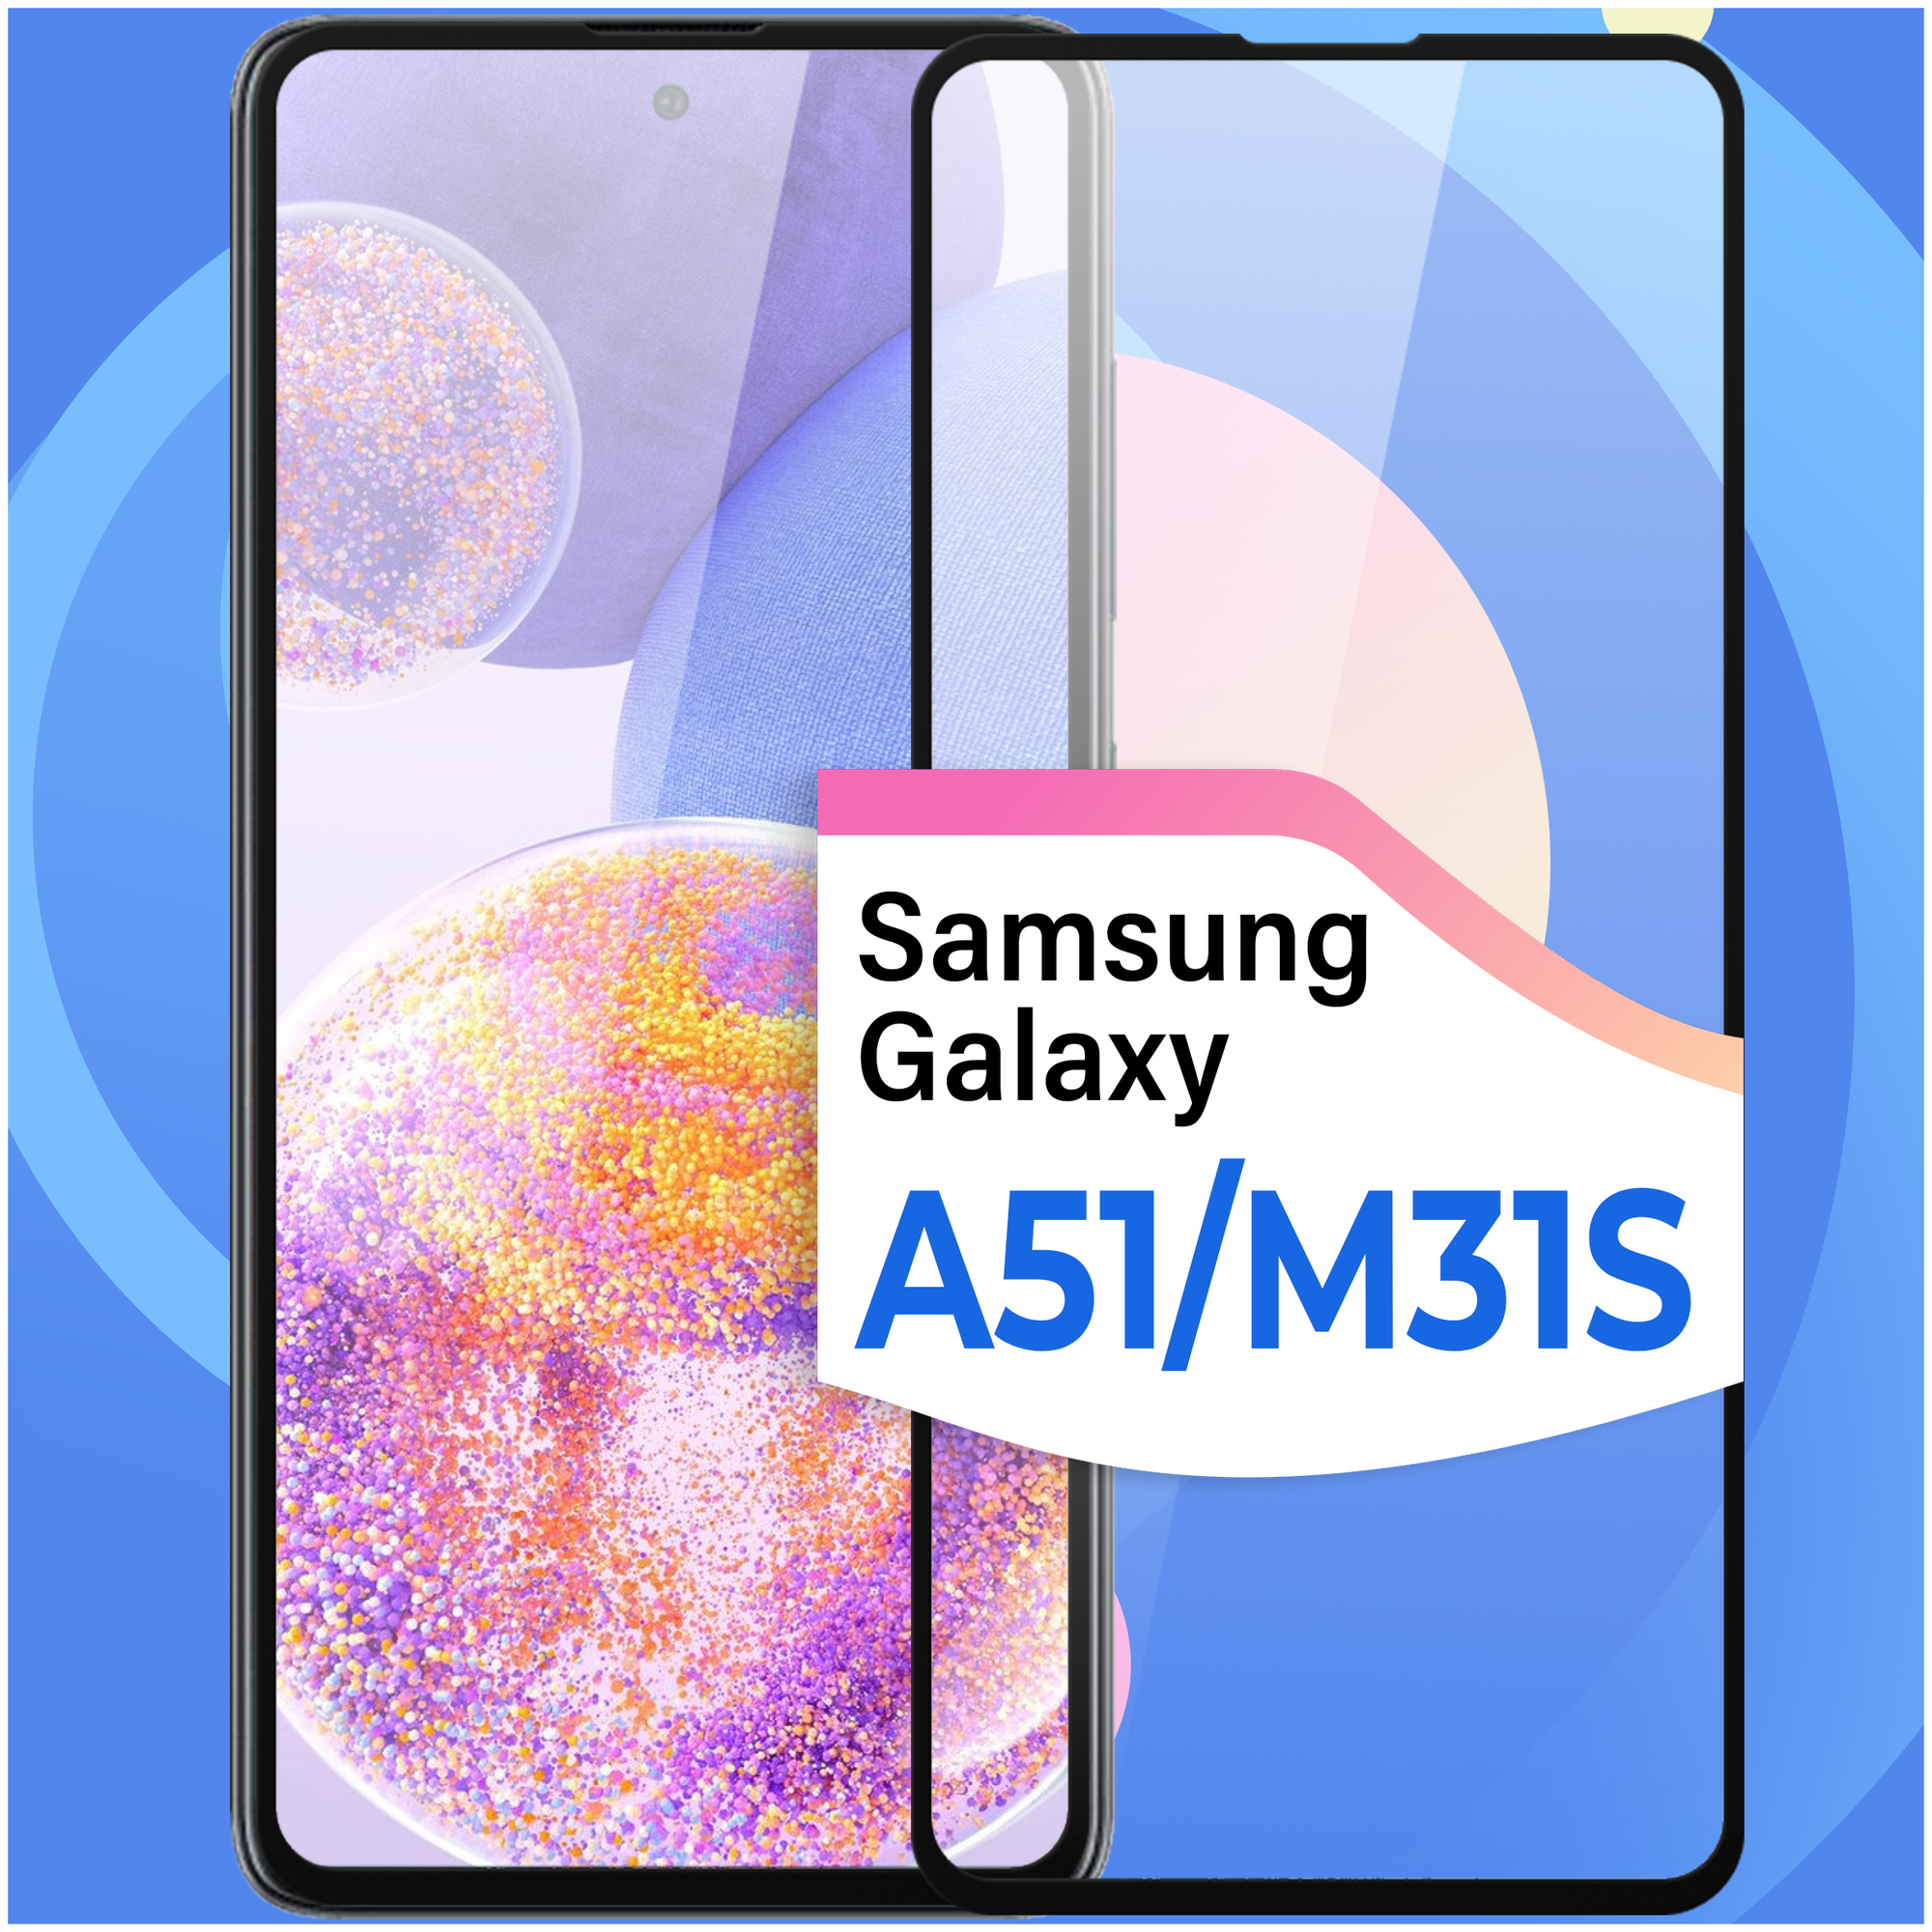 Комплект 2 шт. Противоударное стекло для смартфона Samsung Galaxy A51 и Samsung Galaxy M31S / Защитное стекло на телефон Самсунг Галакси А51 и М31С